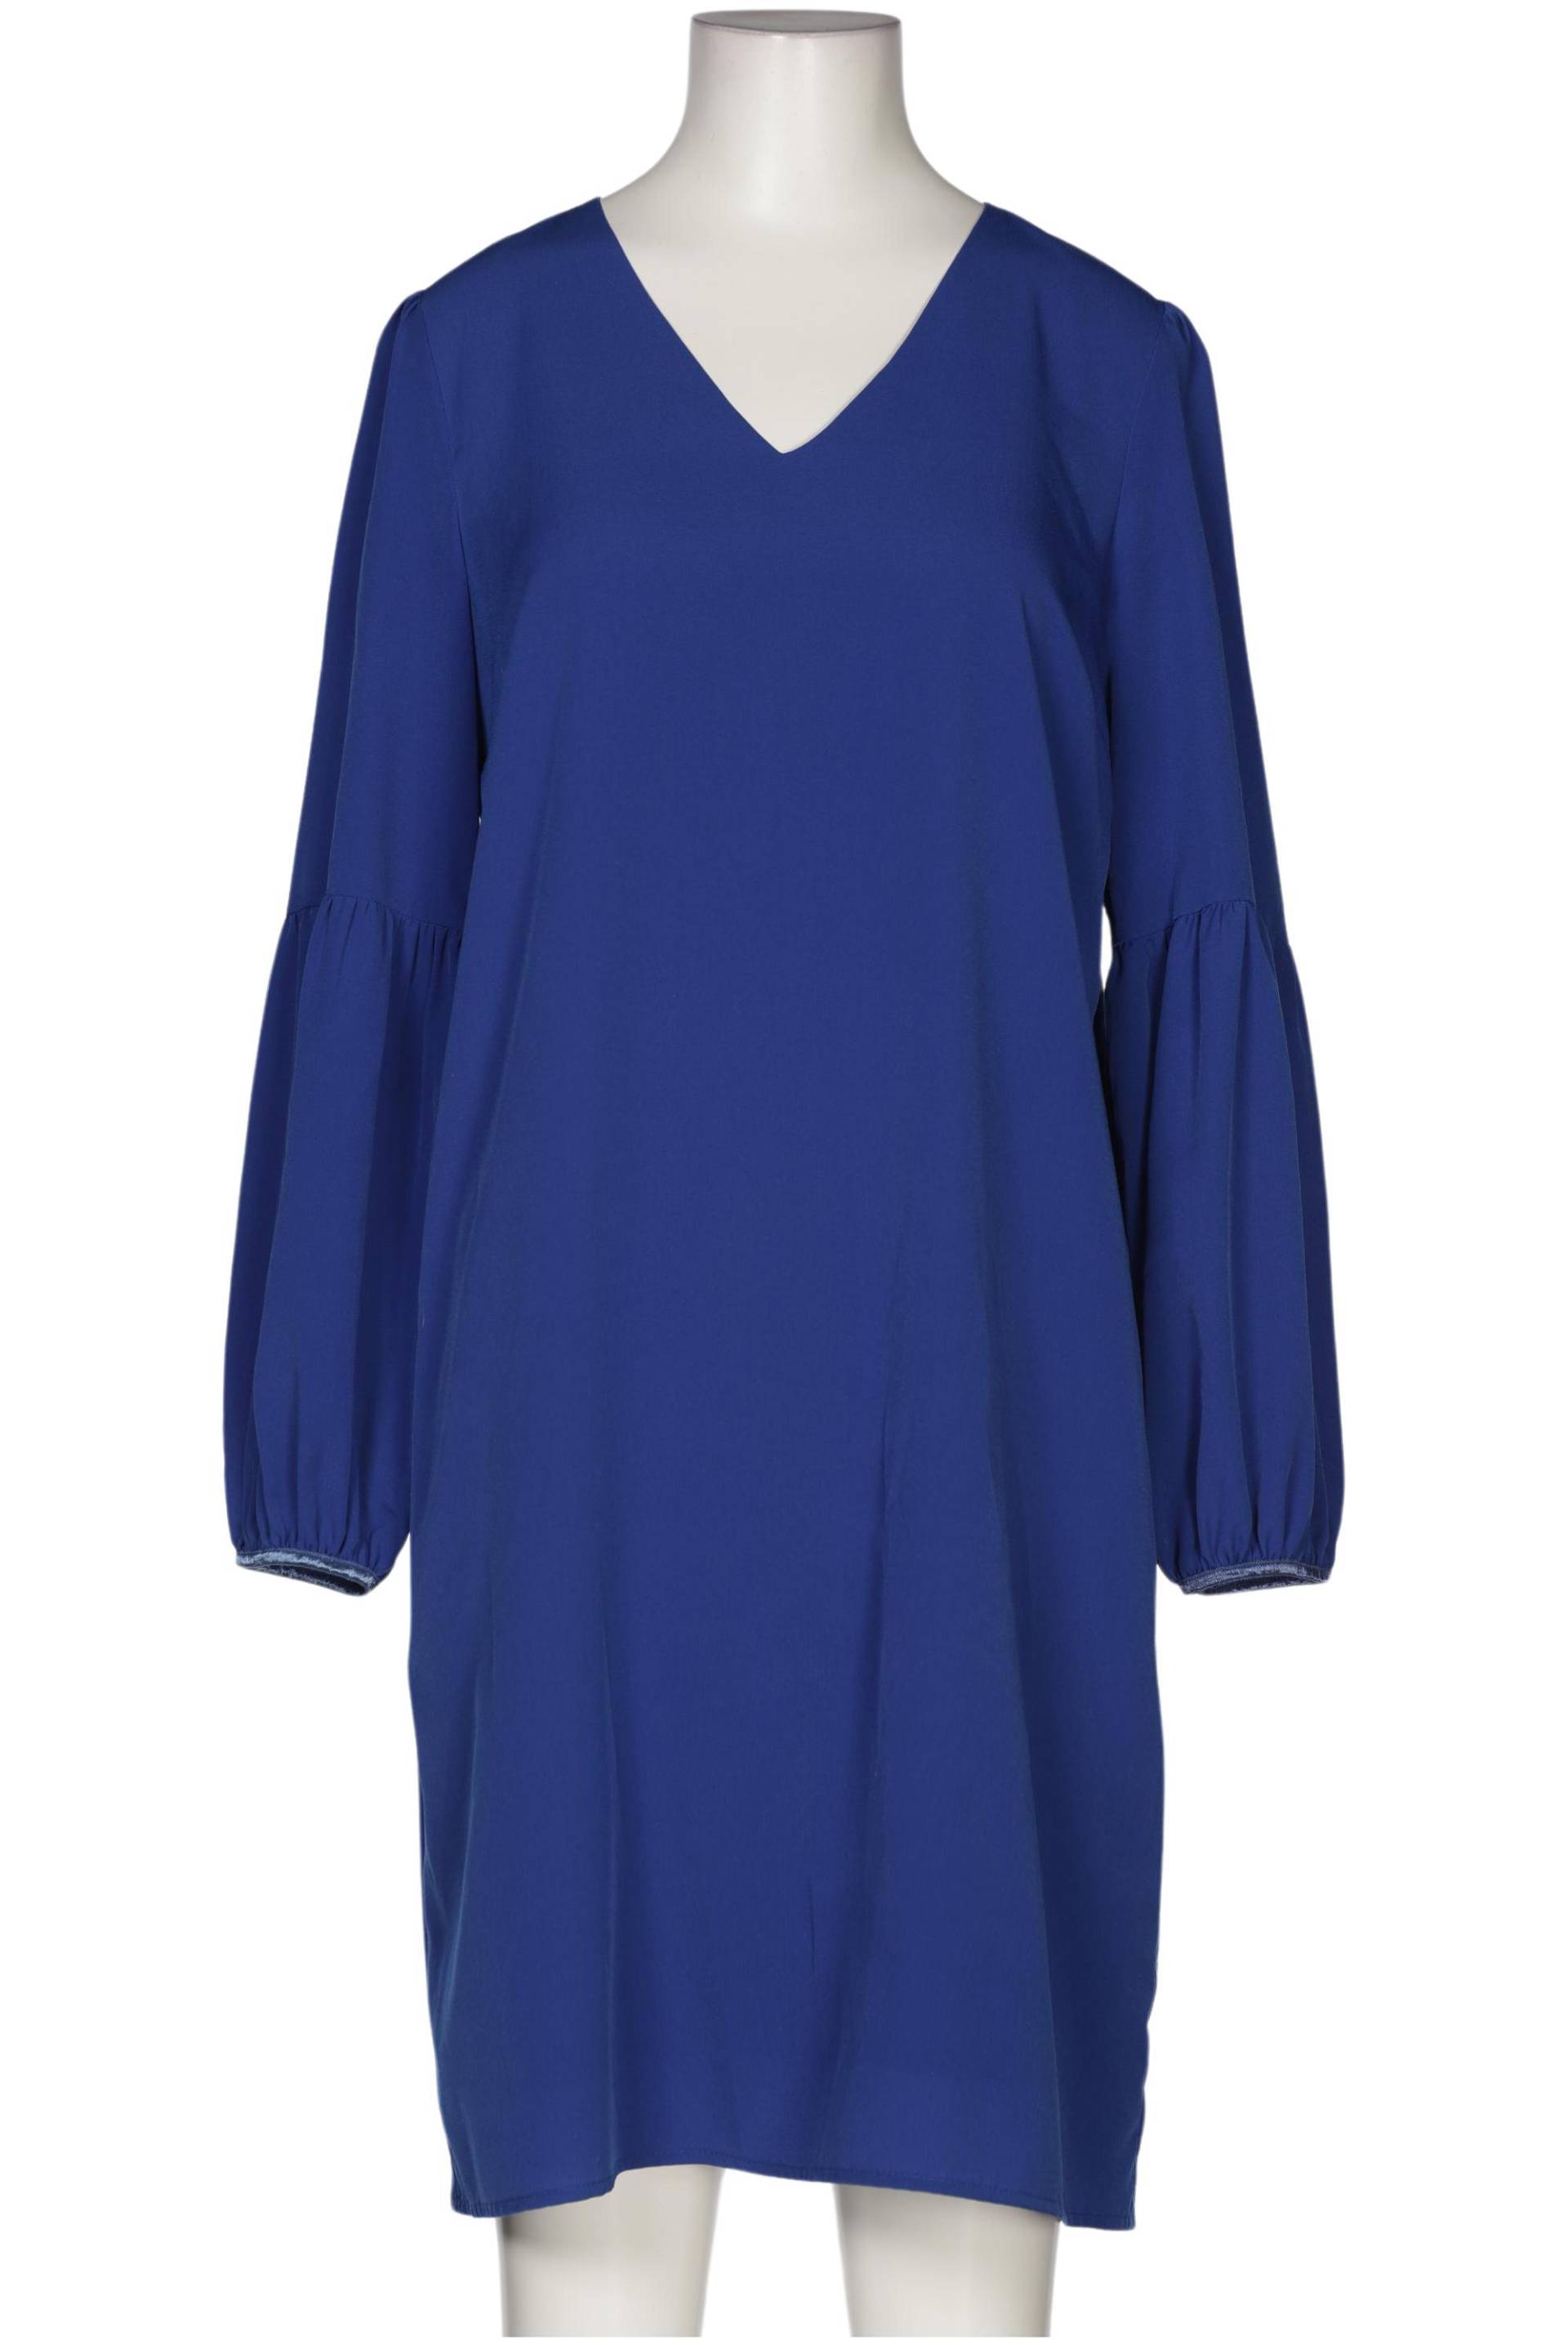 Hallhuber Damen Kleid, blau, Gr. 38 von Hallhuber